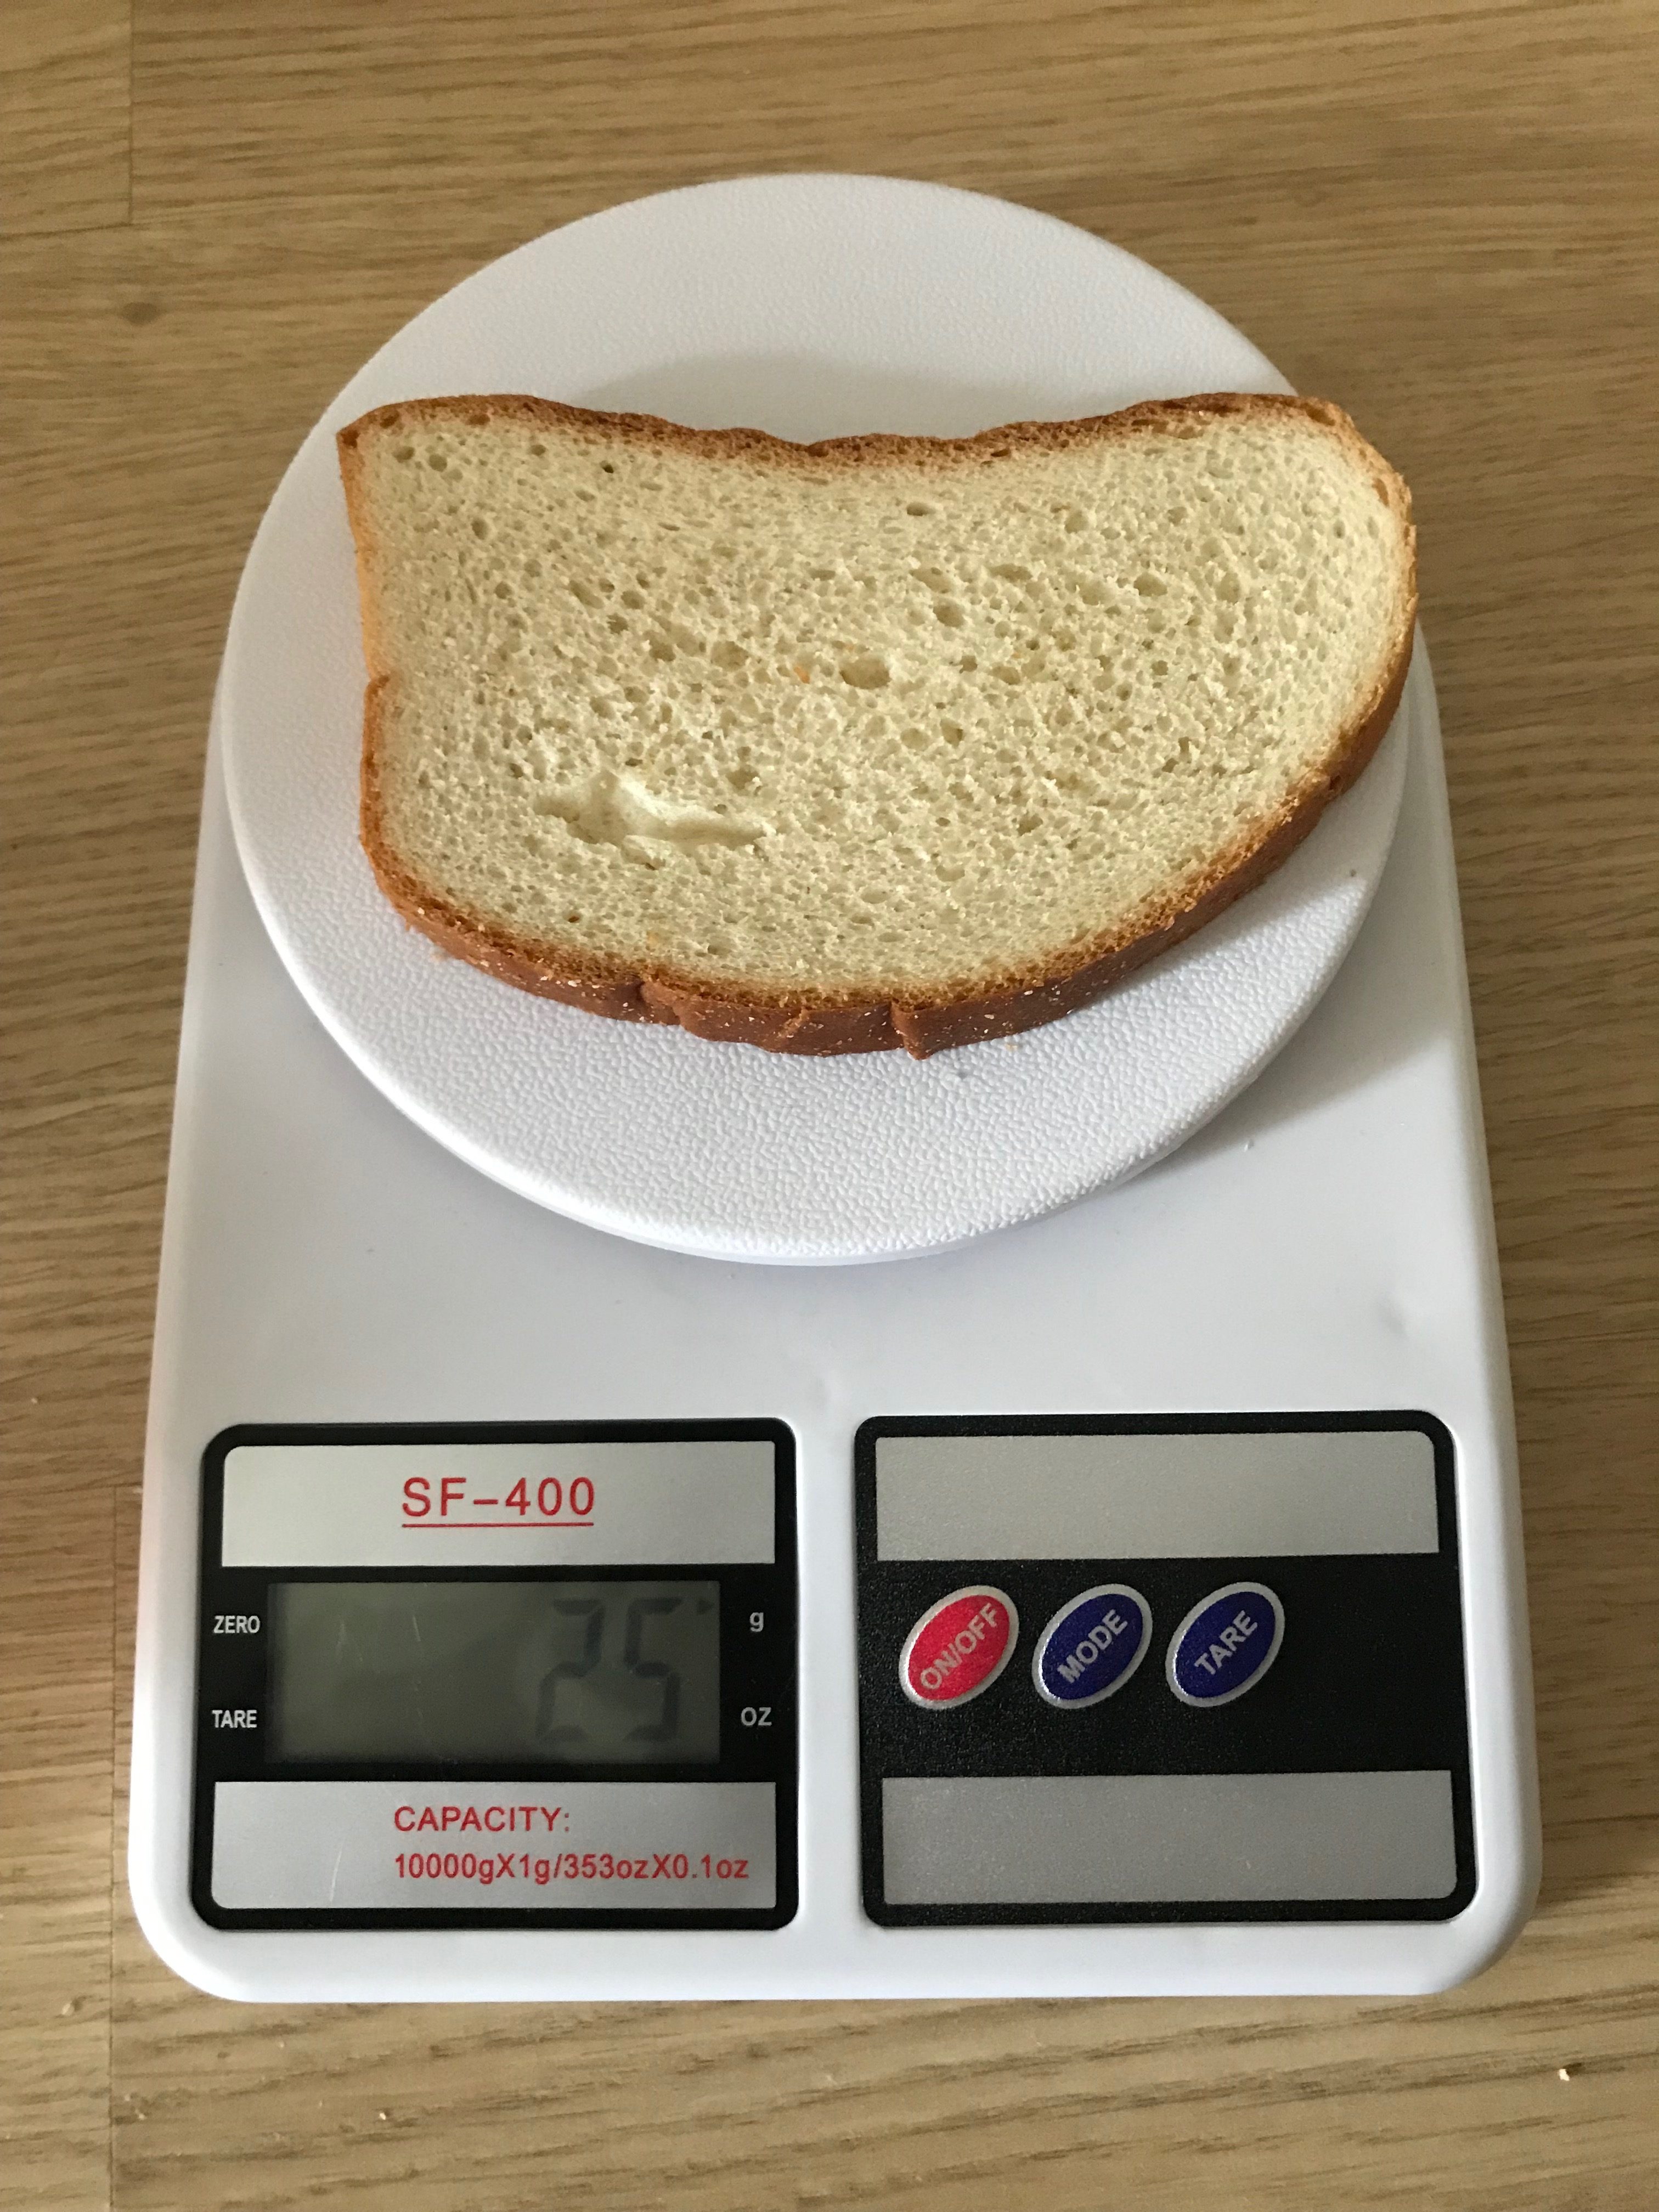 вага шматочка білого хліба